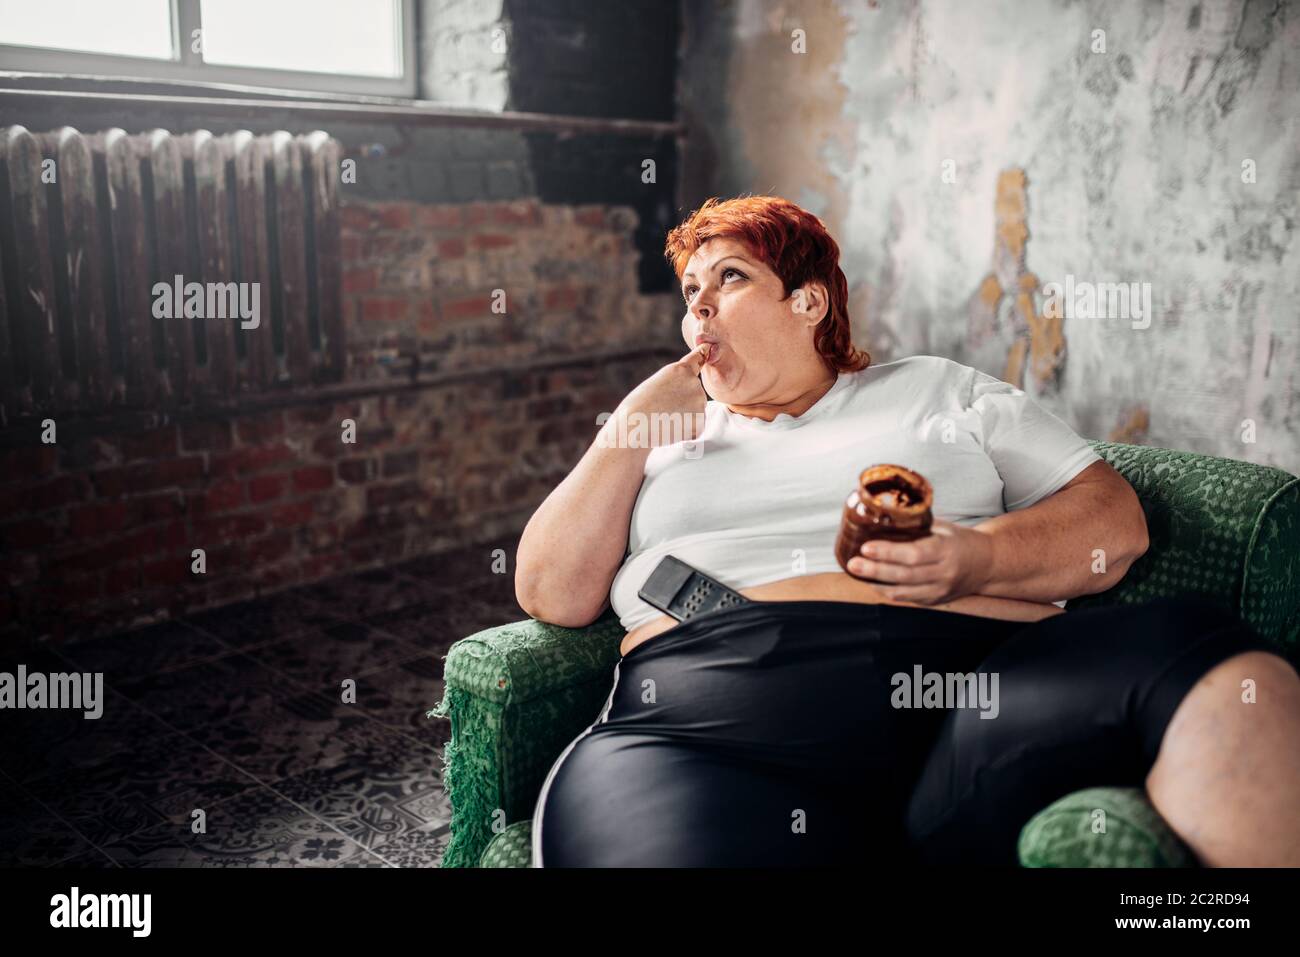 Grosse femme est assise sur une chaise et mange des bonbons, de l'embonpoint. Mode de vie malsain, l'obésité Banque D'Images